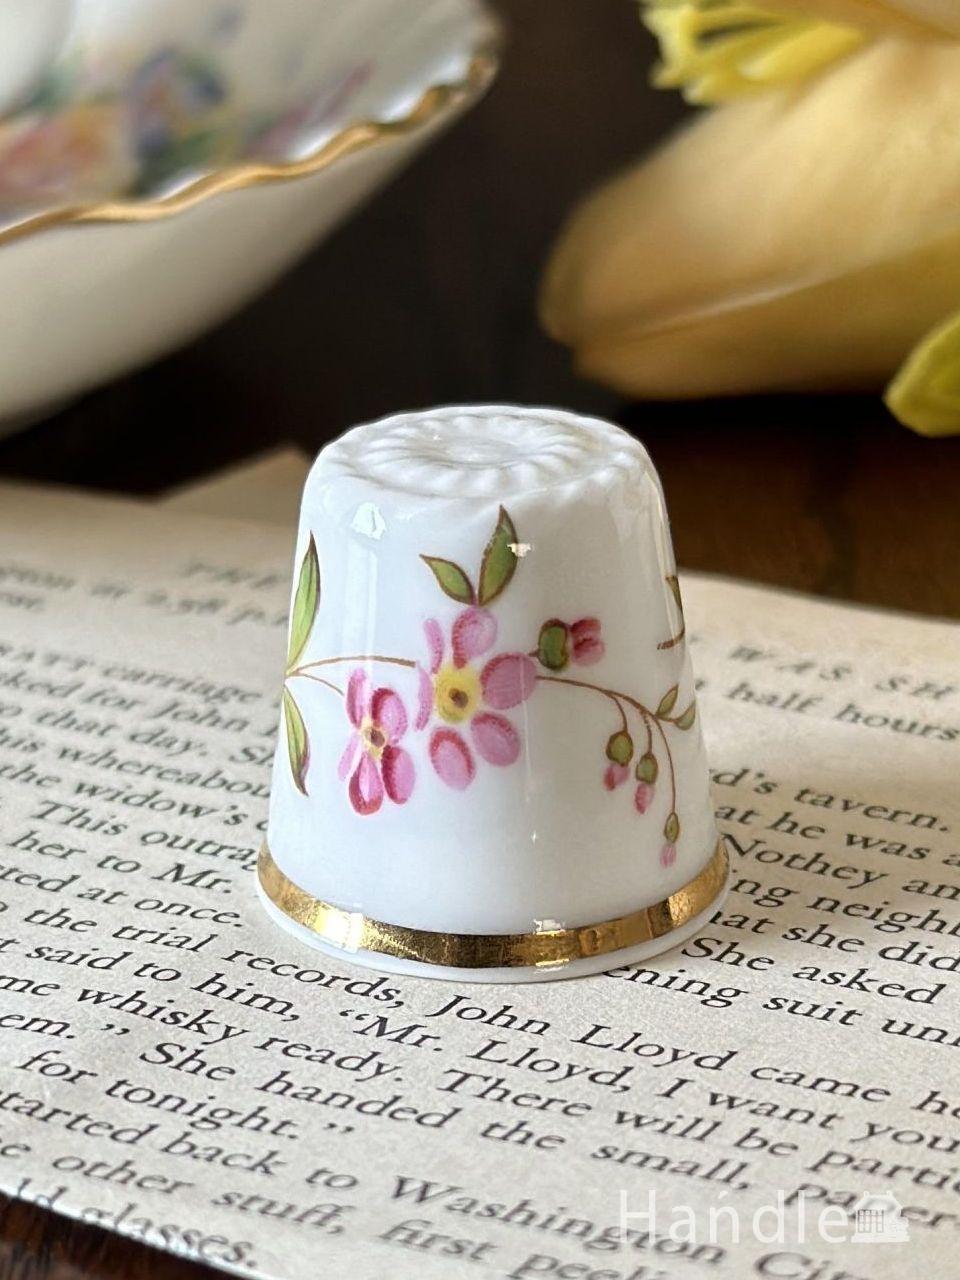 イギリスのアンティークの陶磁器、ピンク×パープル色のお花が楽しめるハマースレイのシンブル (m-8370-z)